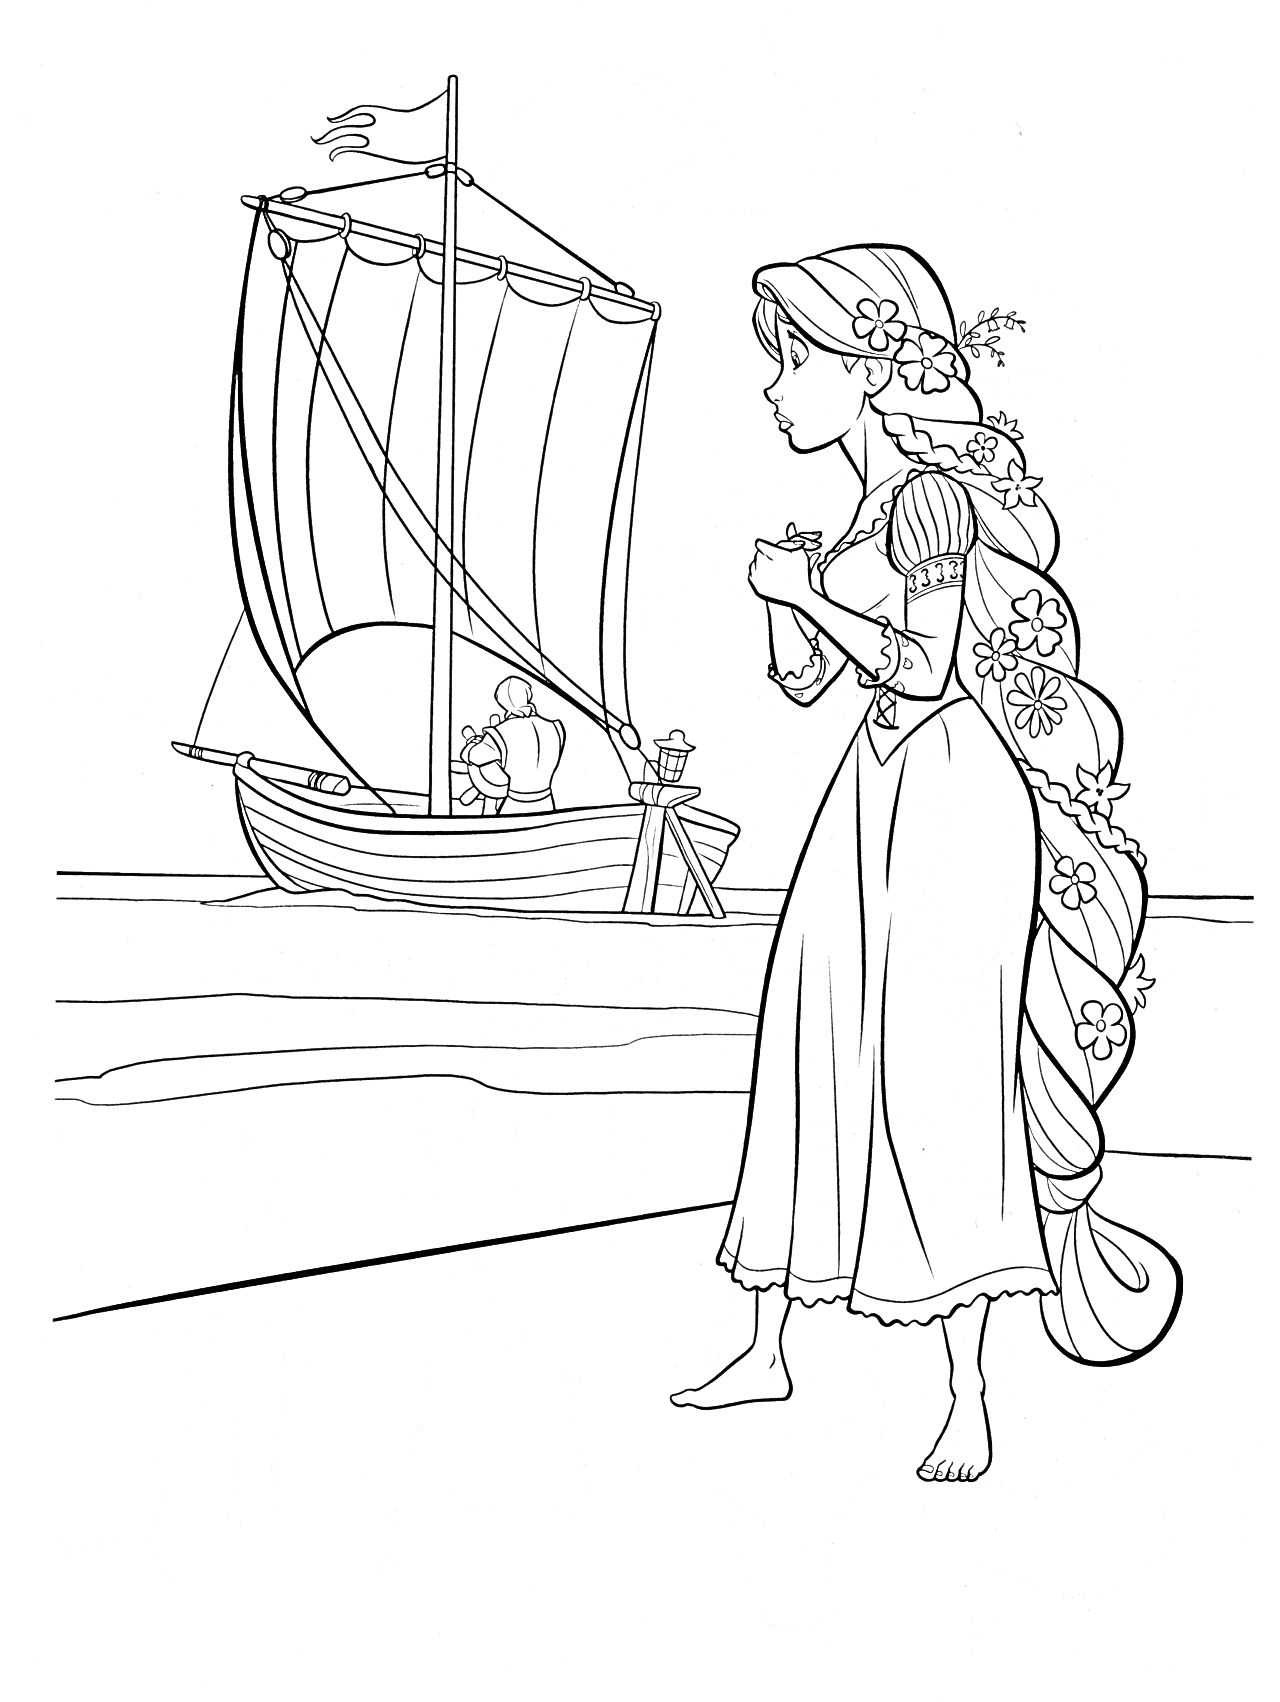 Раскраска Принцесса у берега с кораблём, девушка с длинными распущенными волосами и цветами в волосах, на заднем плане - стоящий у берега парусник